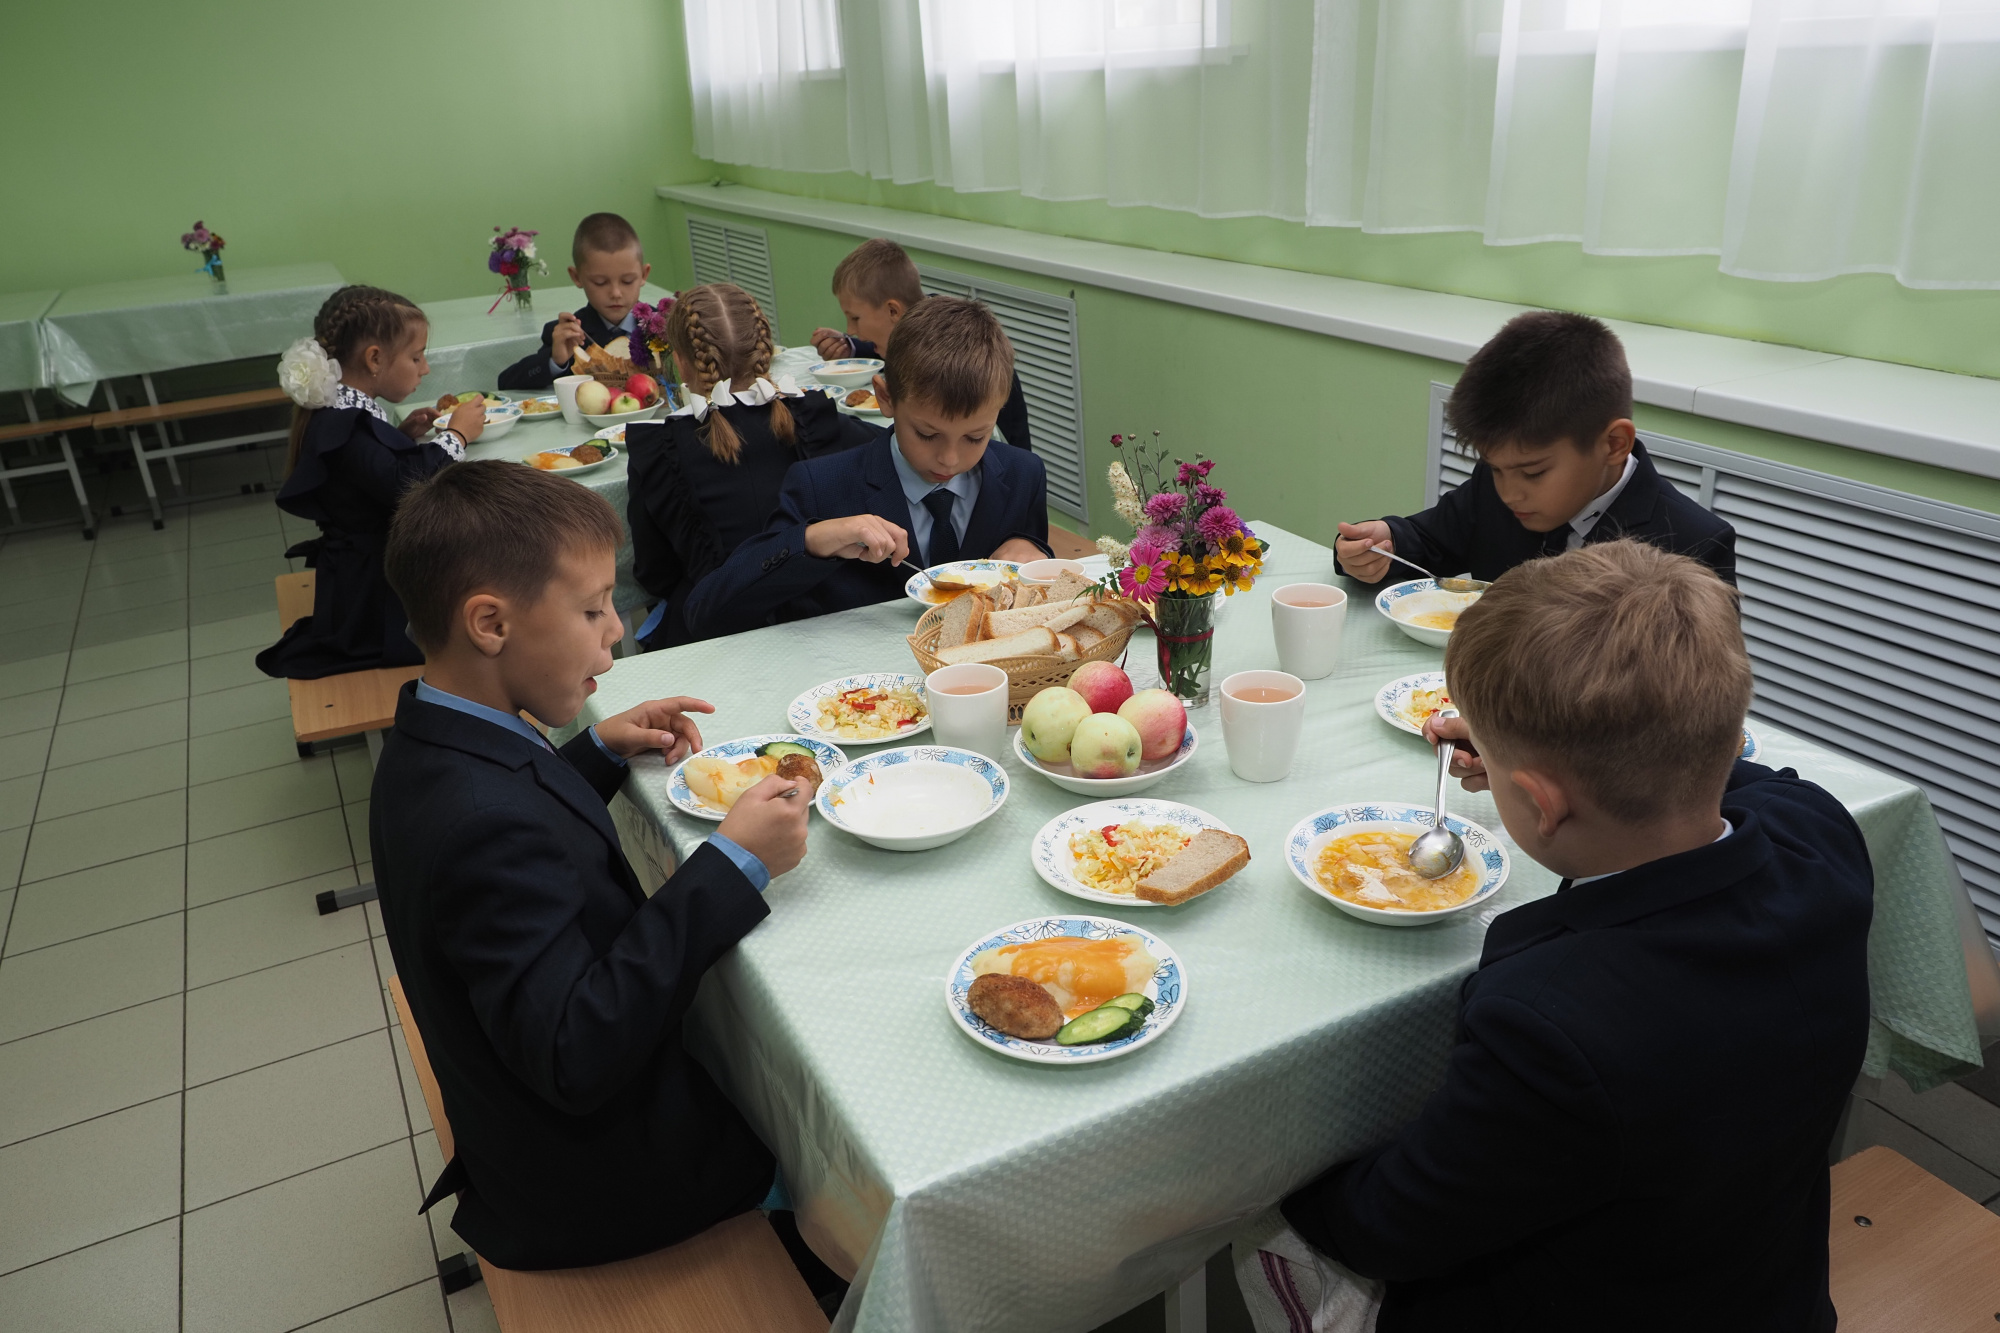 8 школа питание. Школьная столовая. Столовая в школе. Ученики в столовой. Еда в школьной столовой.